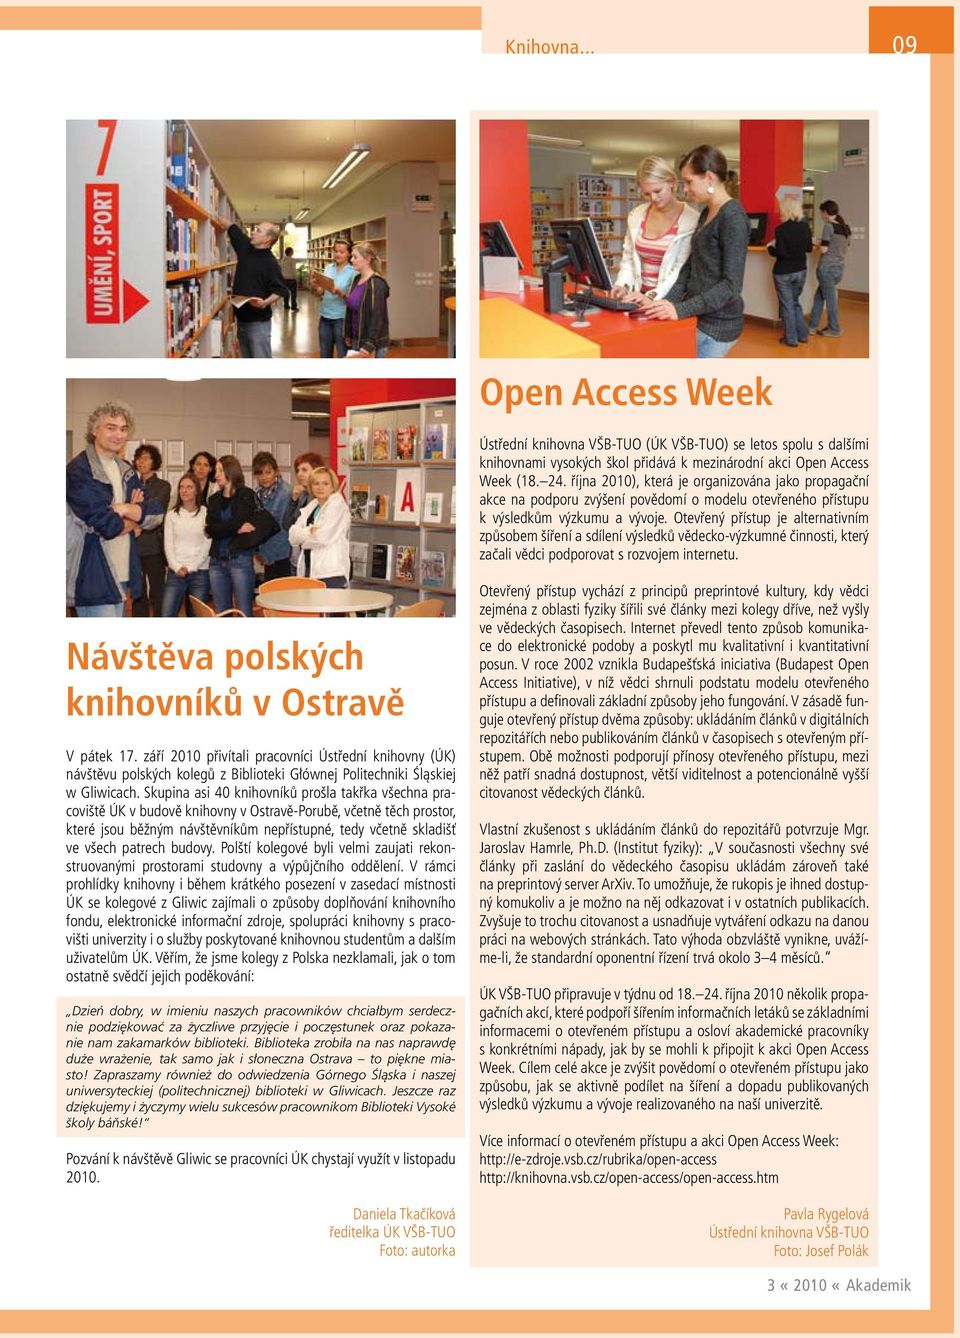 Otevřený přístup je alternativním způsobem šíření a sdílení výsledků vědecko-výzkumné činnosti, který začali vědci podporovat s rozvojem internetu. Návštěva polských knihovníků v Ostravě V pátek 17.